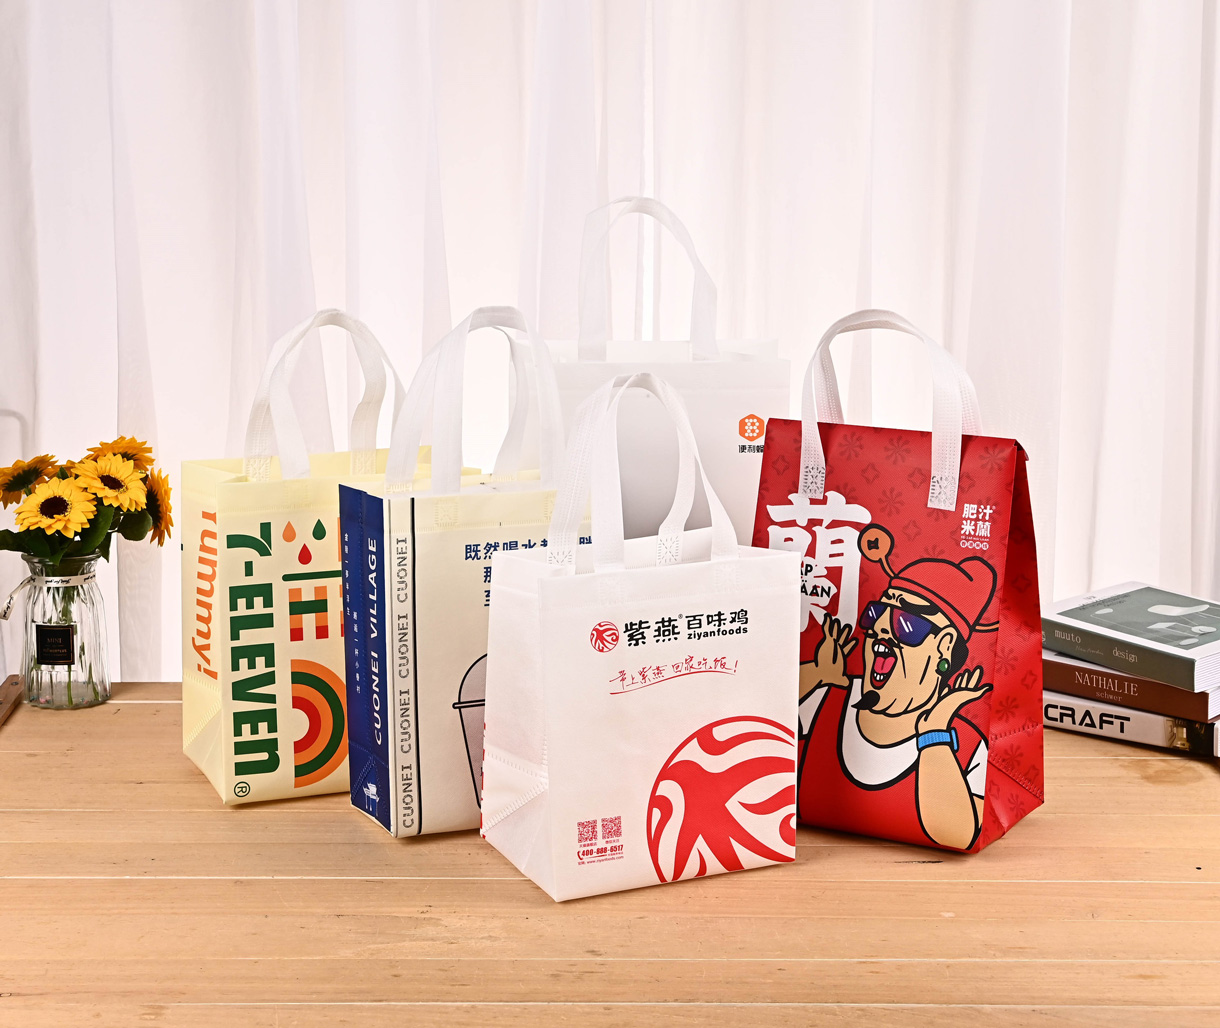 温州市沐瑶包装有限公司将亮相SCTPE餐饮外卖包装展览会